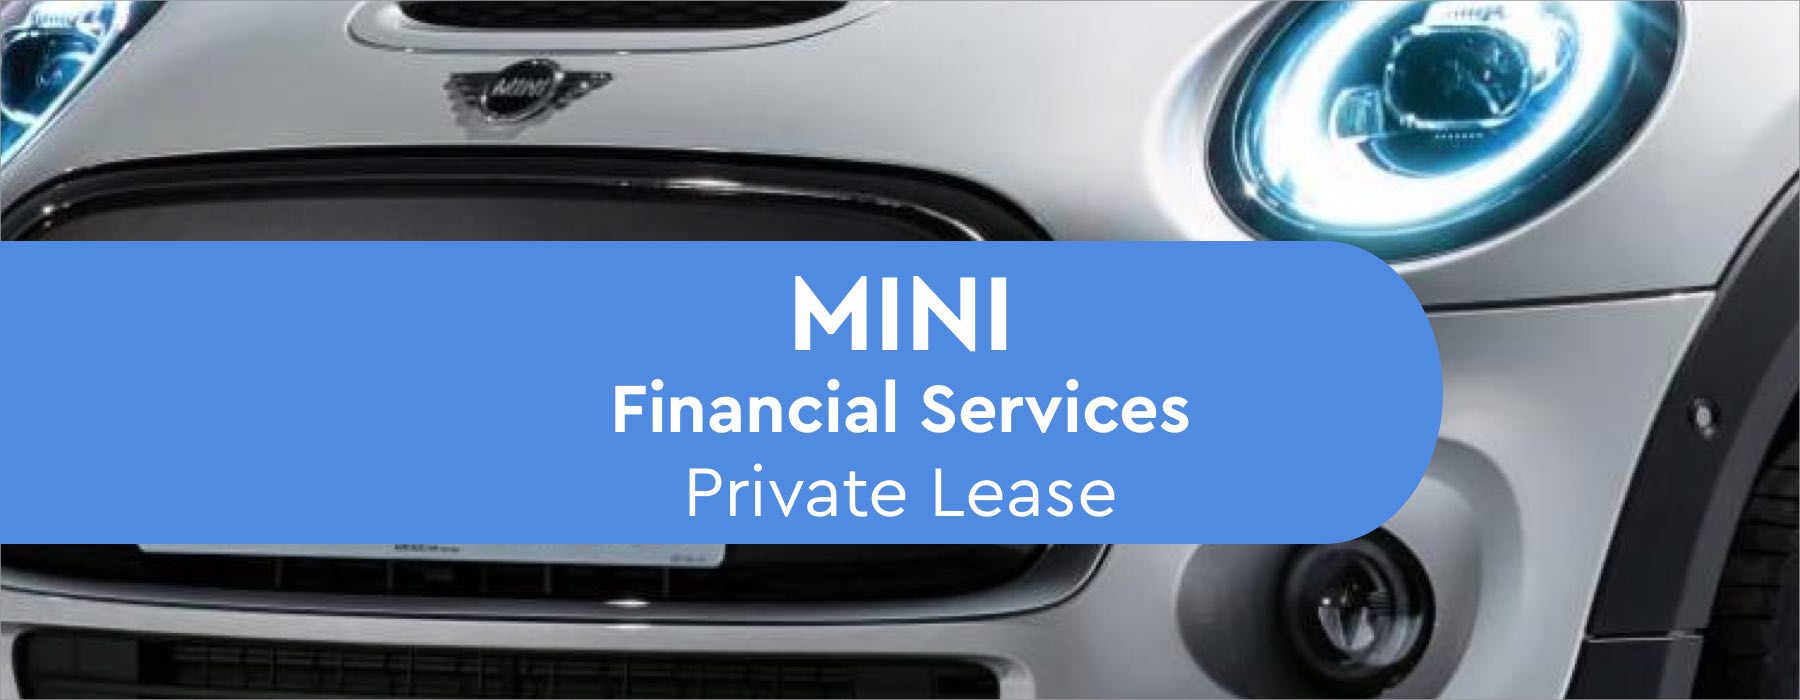 MINI financial services Private Lease